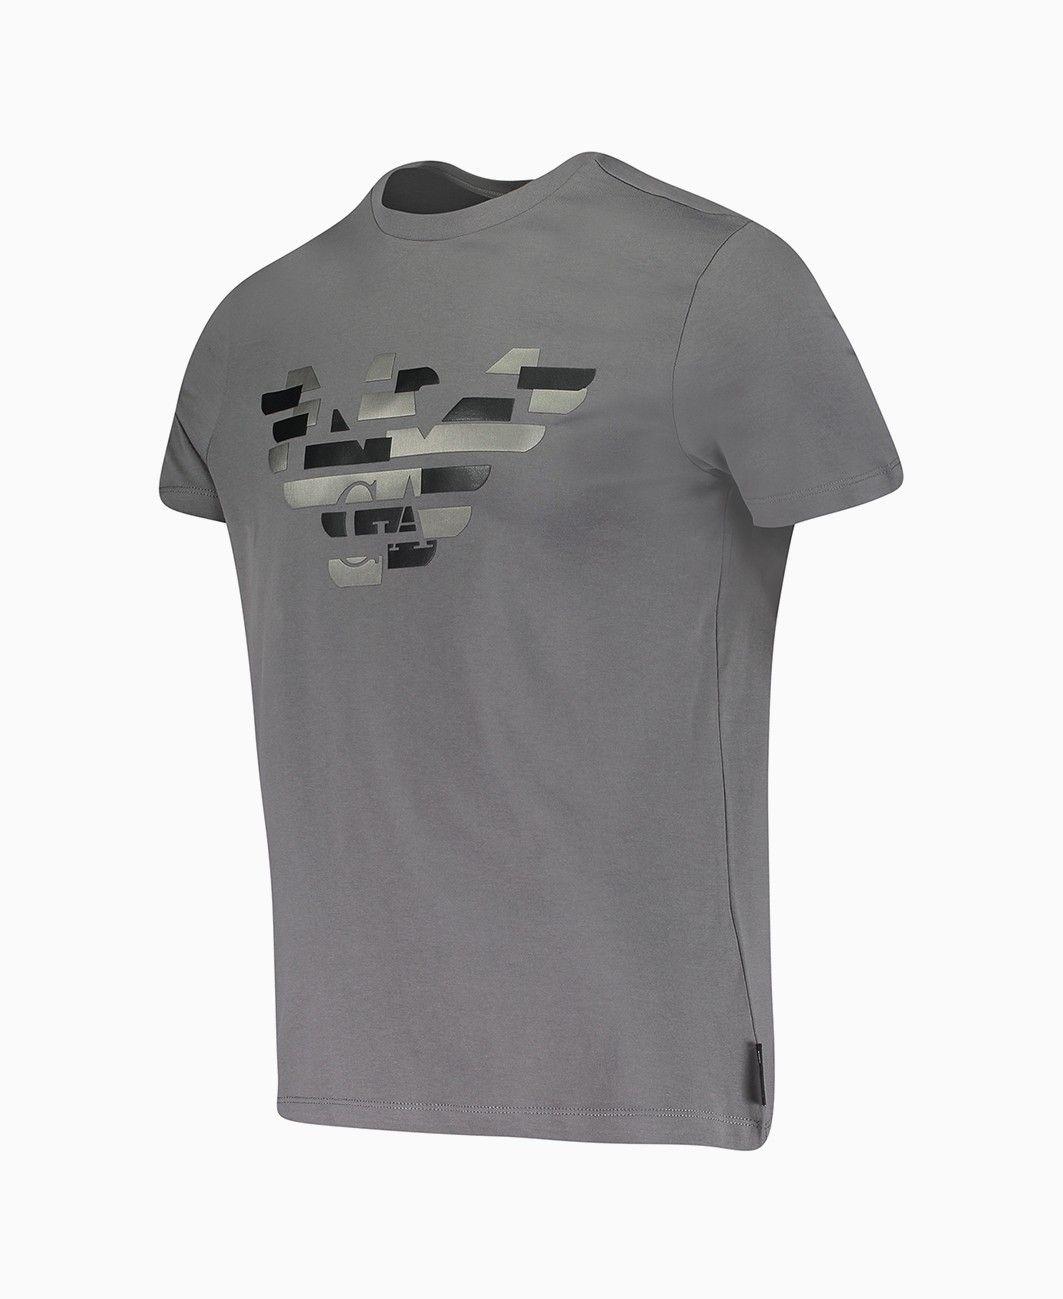 Camo GA Logo - Emporio Armani - Camo GA Eagle T-Shirt - Grey